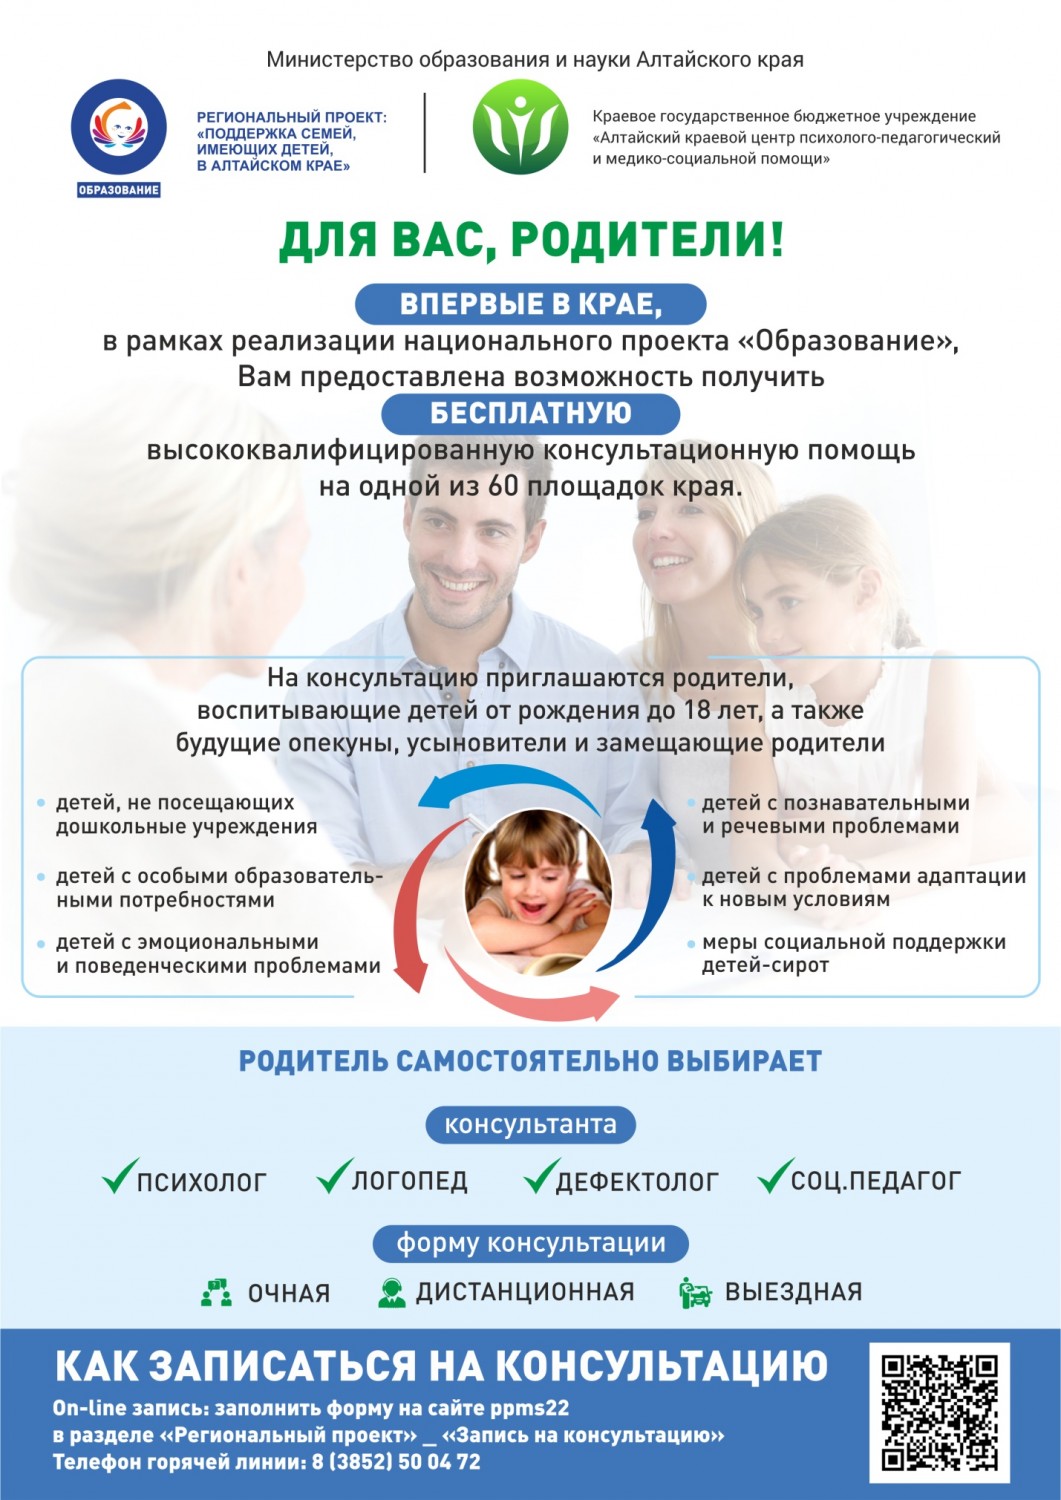 Региональный проект «Психолого-педагогическое консультирование и поддержка семей, имеющих детей, в Алтайском крае»